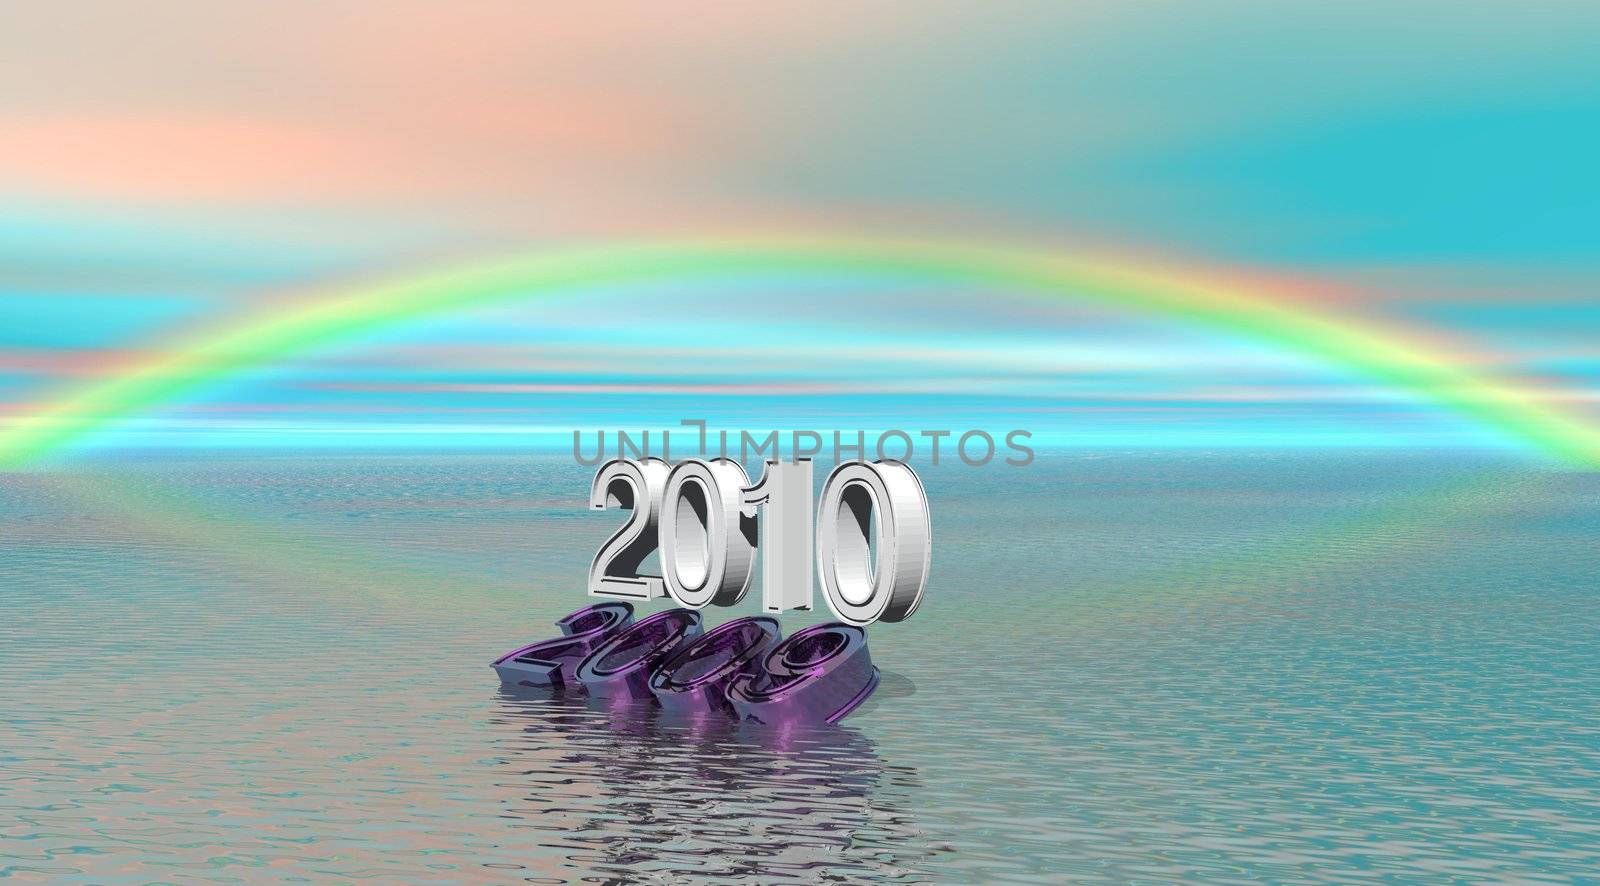 2010 and rainbow by mariephotos